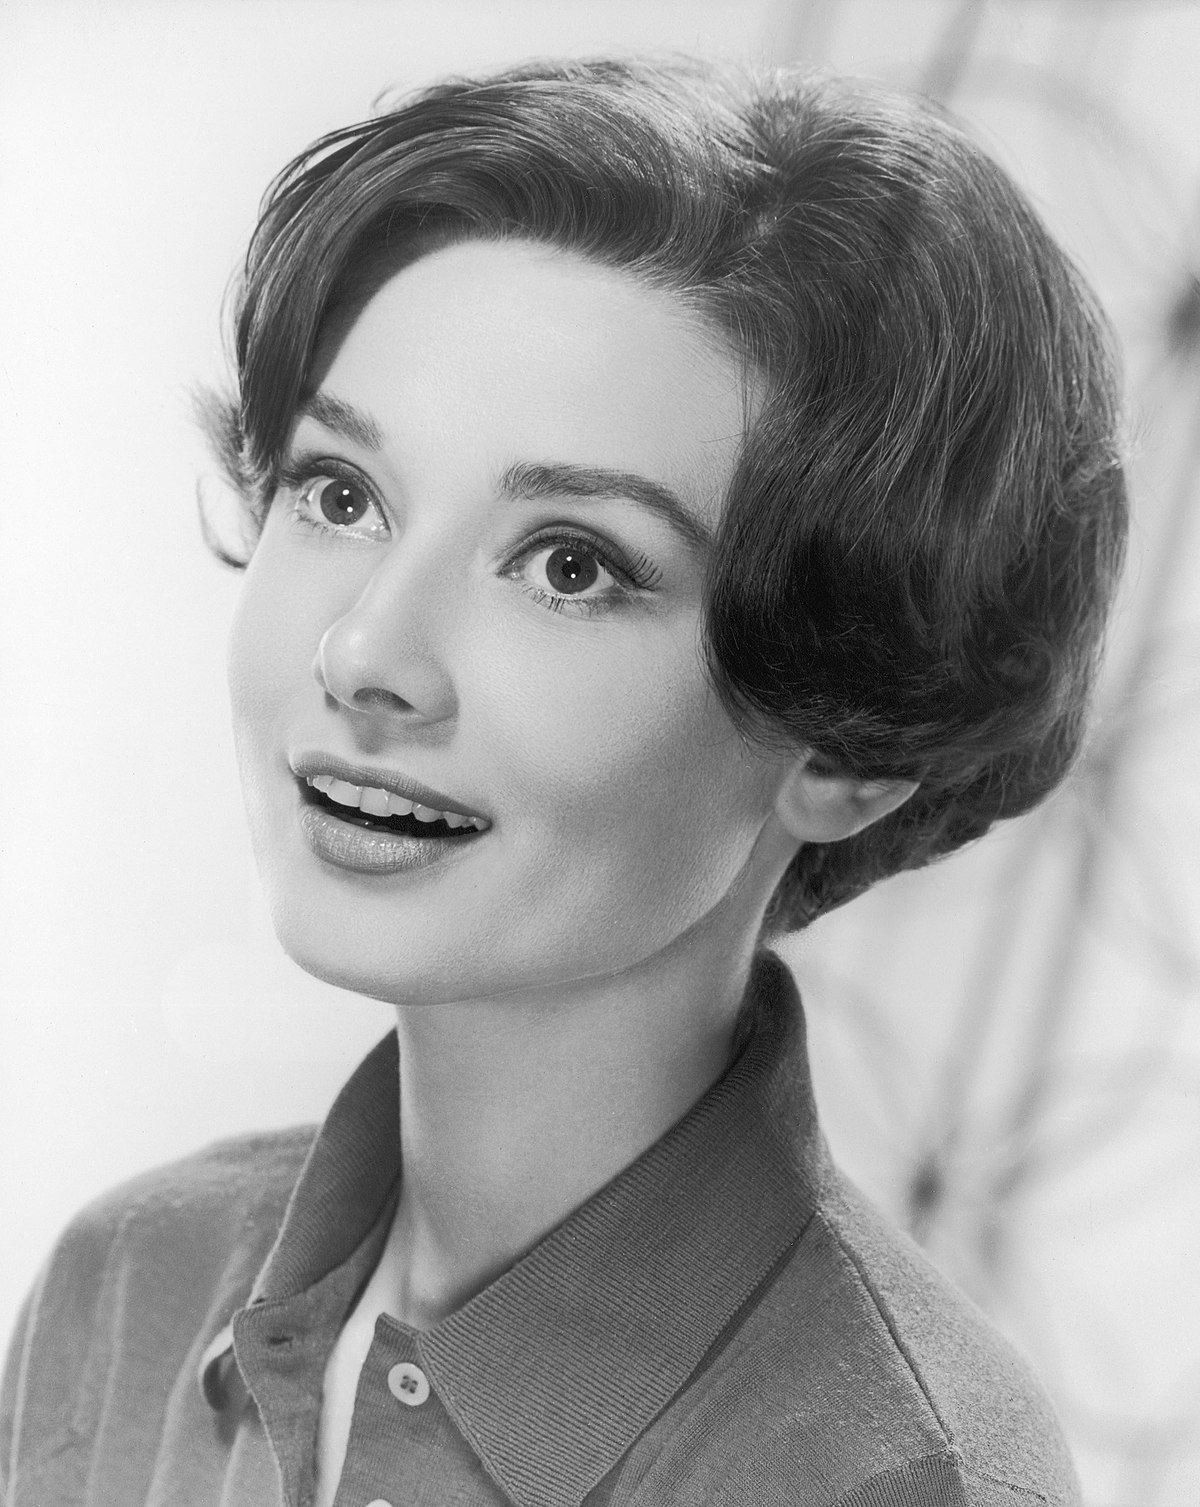 Audrey Hepburn: IT Girl đời đầu, nàng thơ của Givenchy, cảm hứng thời trang khiến hậu thế kính cẩn nghiêng mình - Ảnh 2.